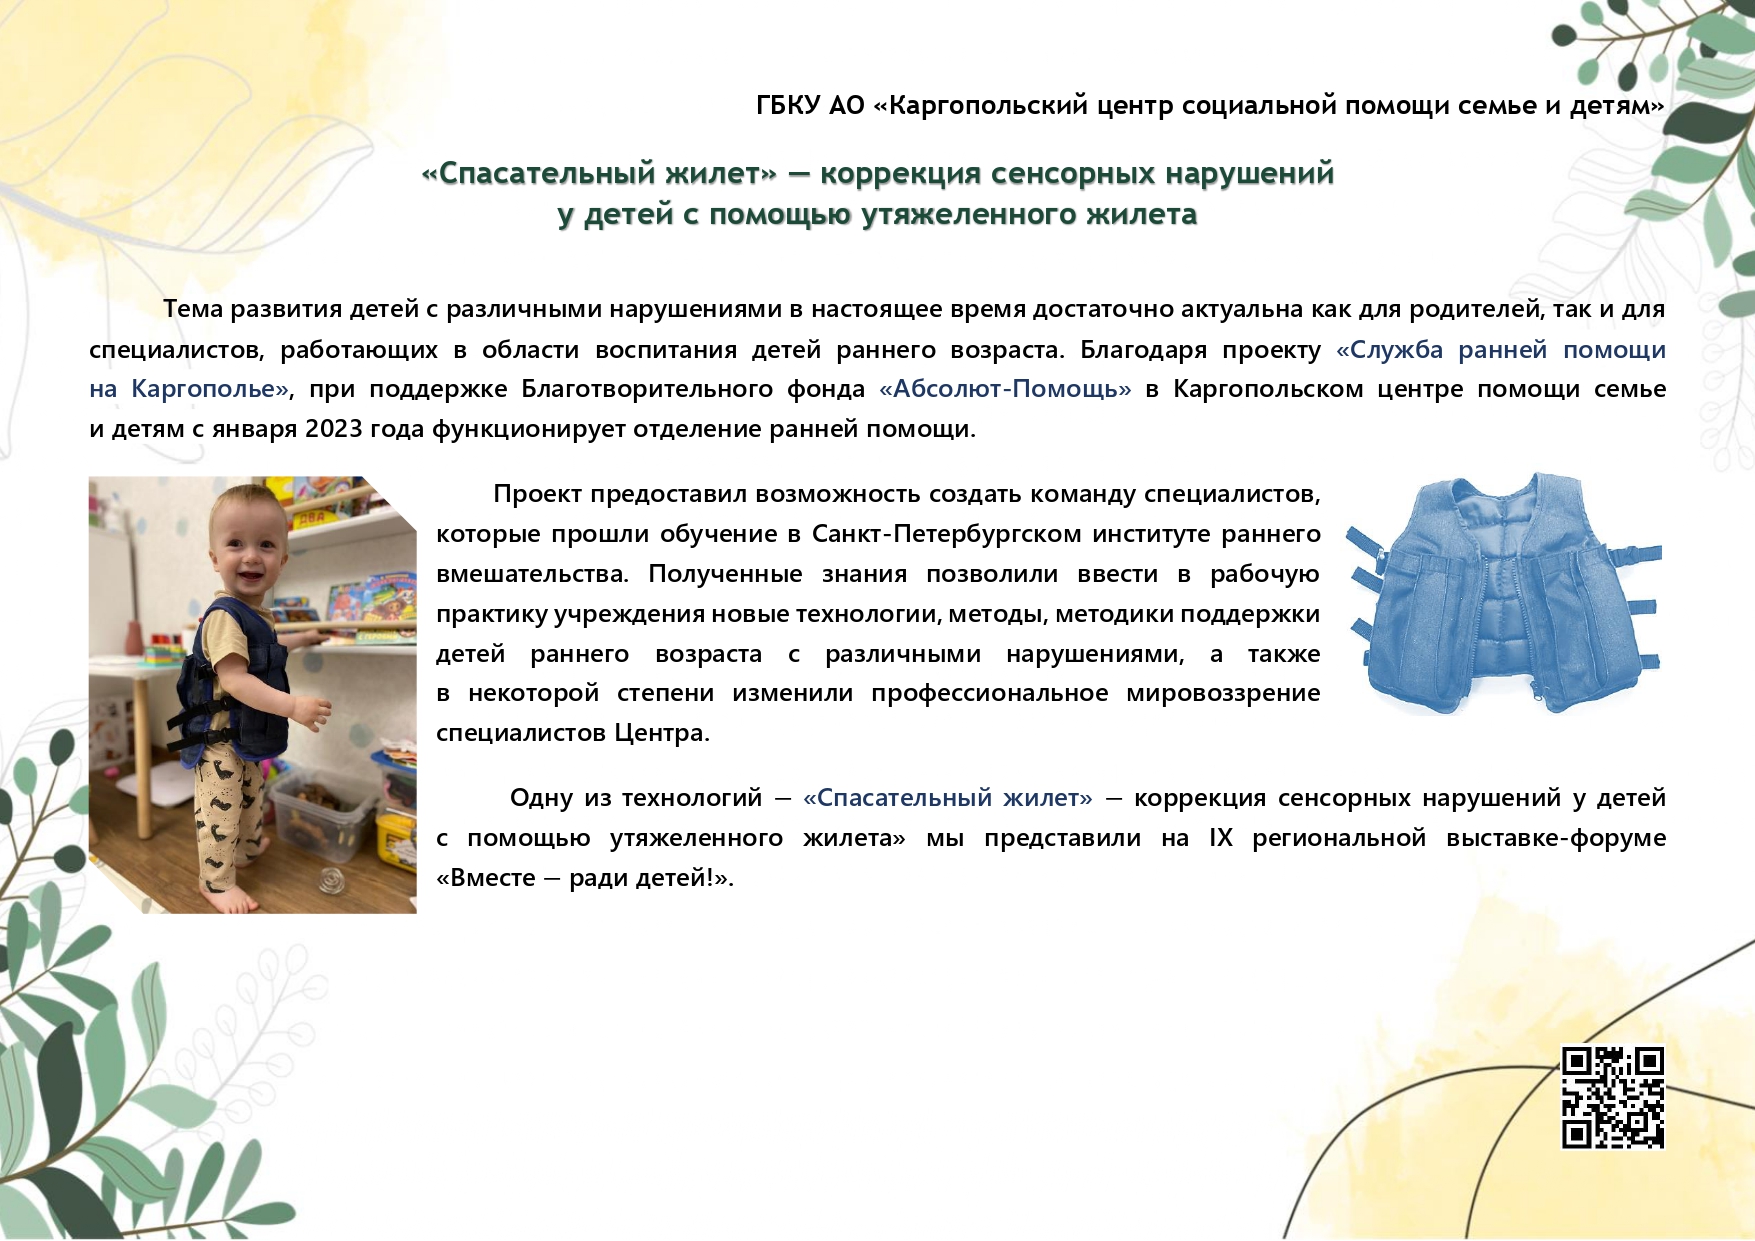 Panorama_metodicheskikh_idey_iz_praktiki_raboty_uchrezhdeniy_sotsialnoy_sfery_2023_page-0009